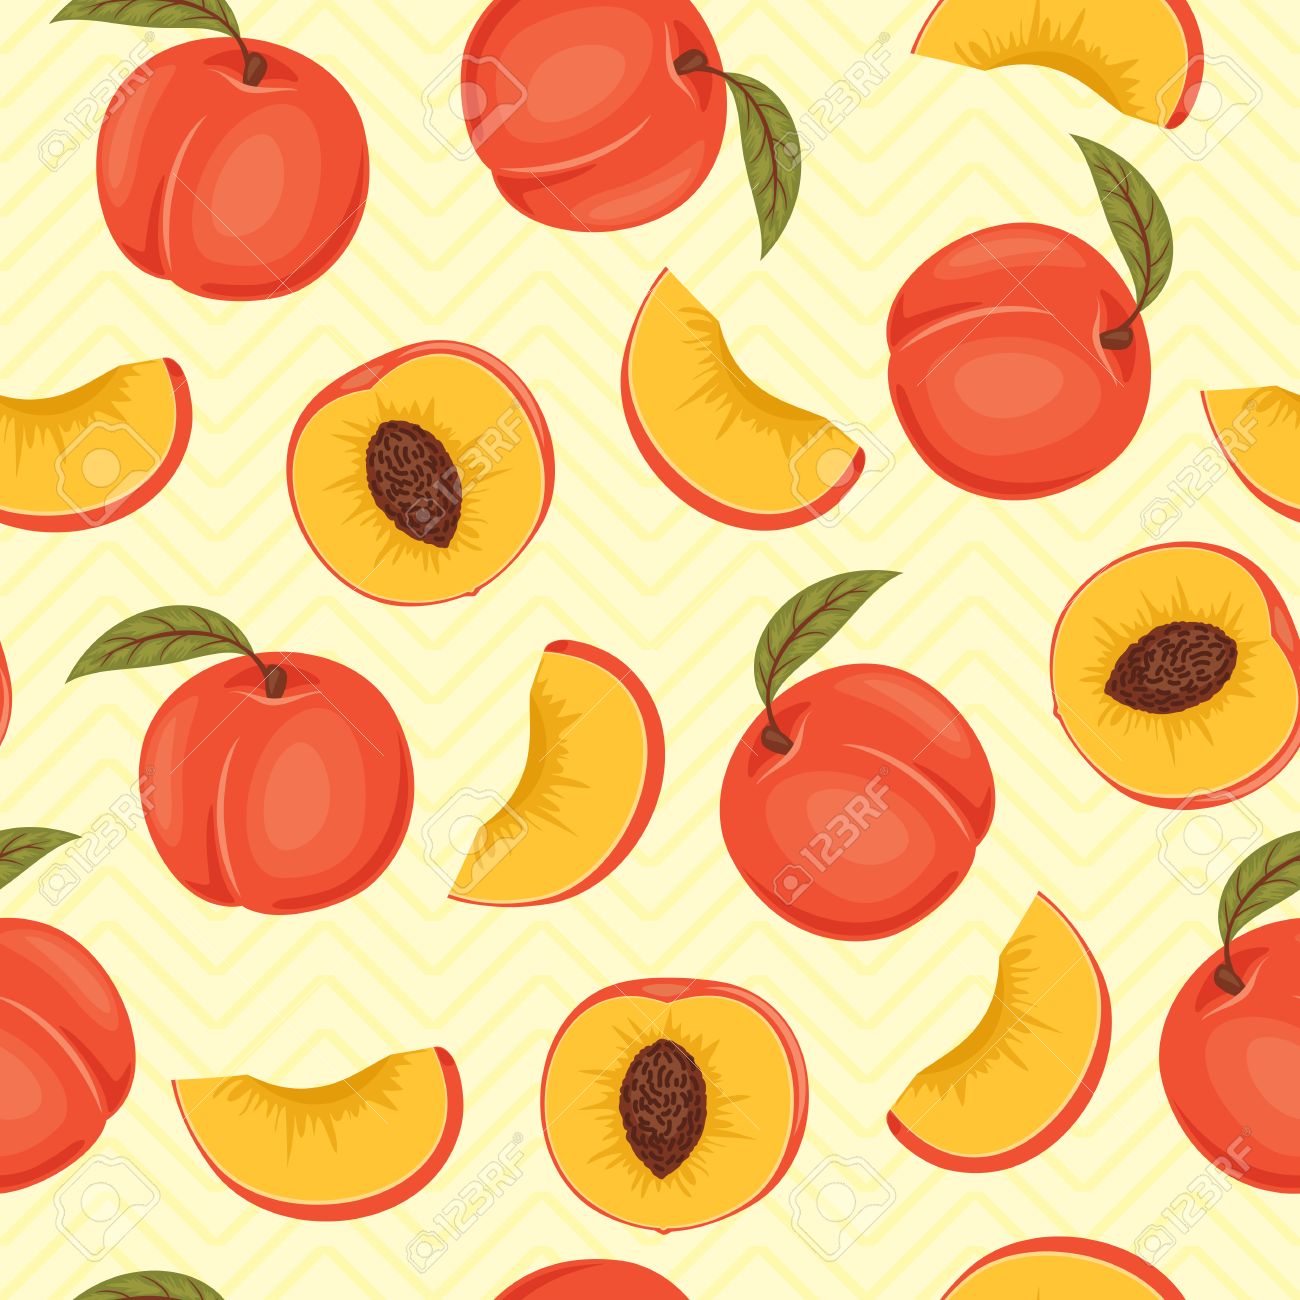 Free download Peach Seamless Pattern Peach Vector Wallpaper Peaches ...